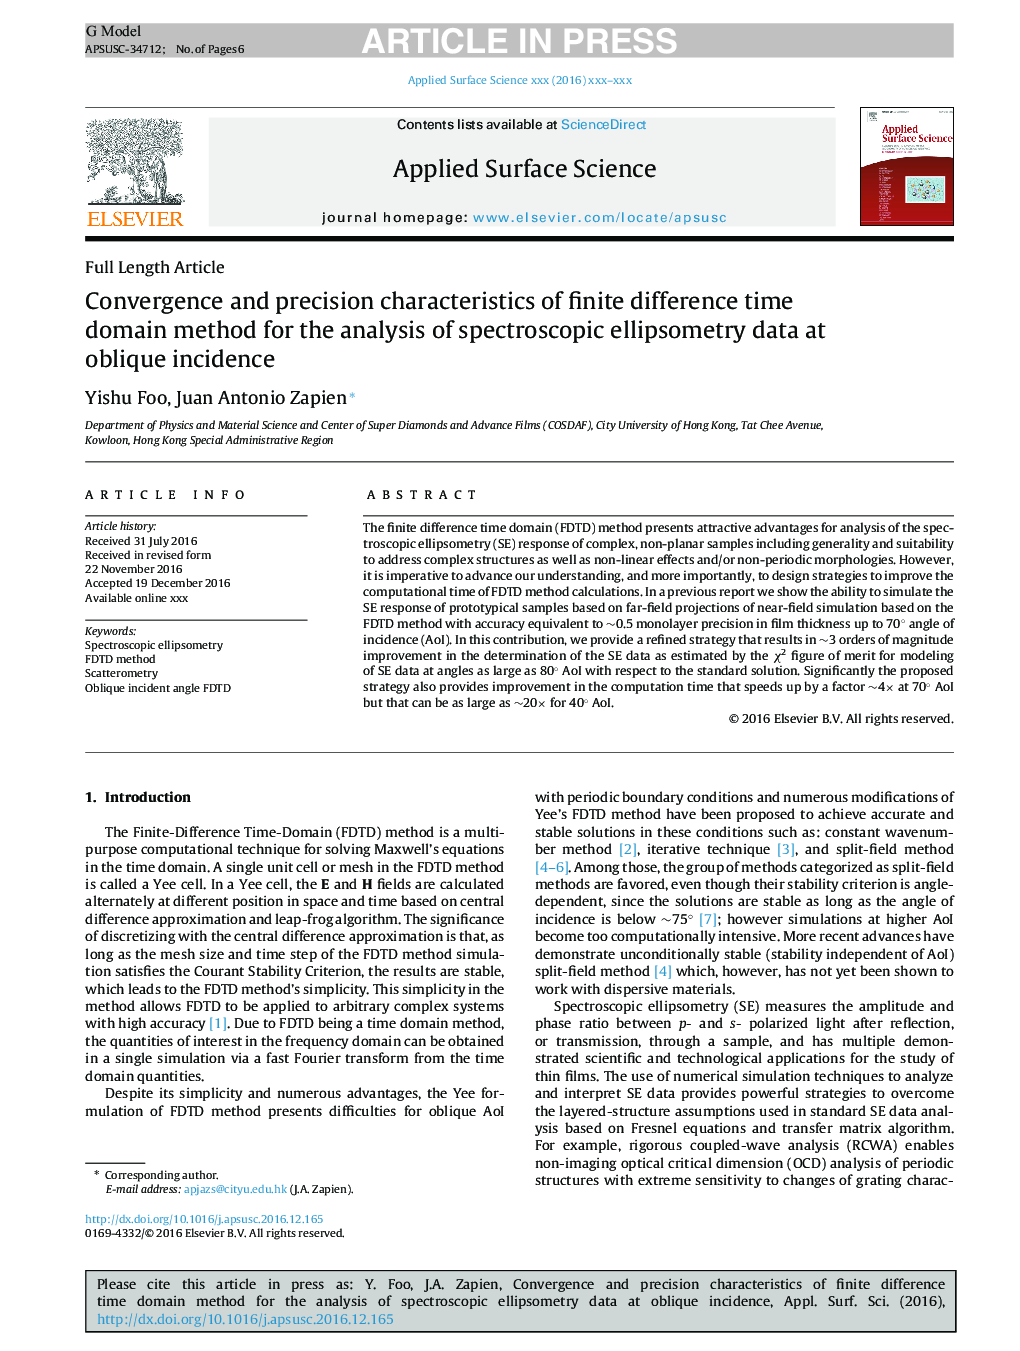 ویژگی های همگرایی و دقت روش دامنه اختلاف زمانی محدود برای تجزیه و تحلیل داده های طیف سنجی ایلپسومتری در بروز مضر 